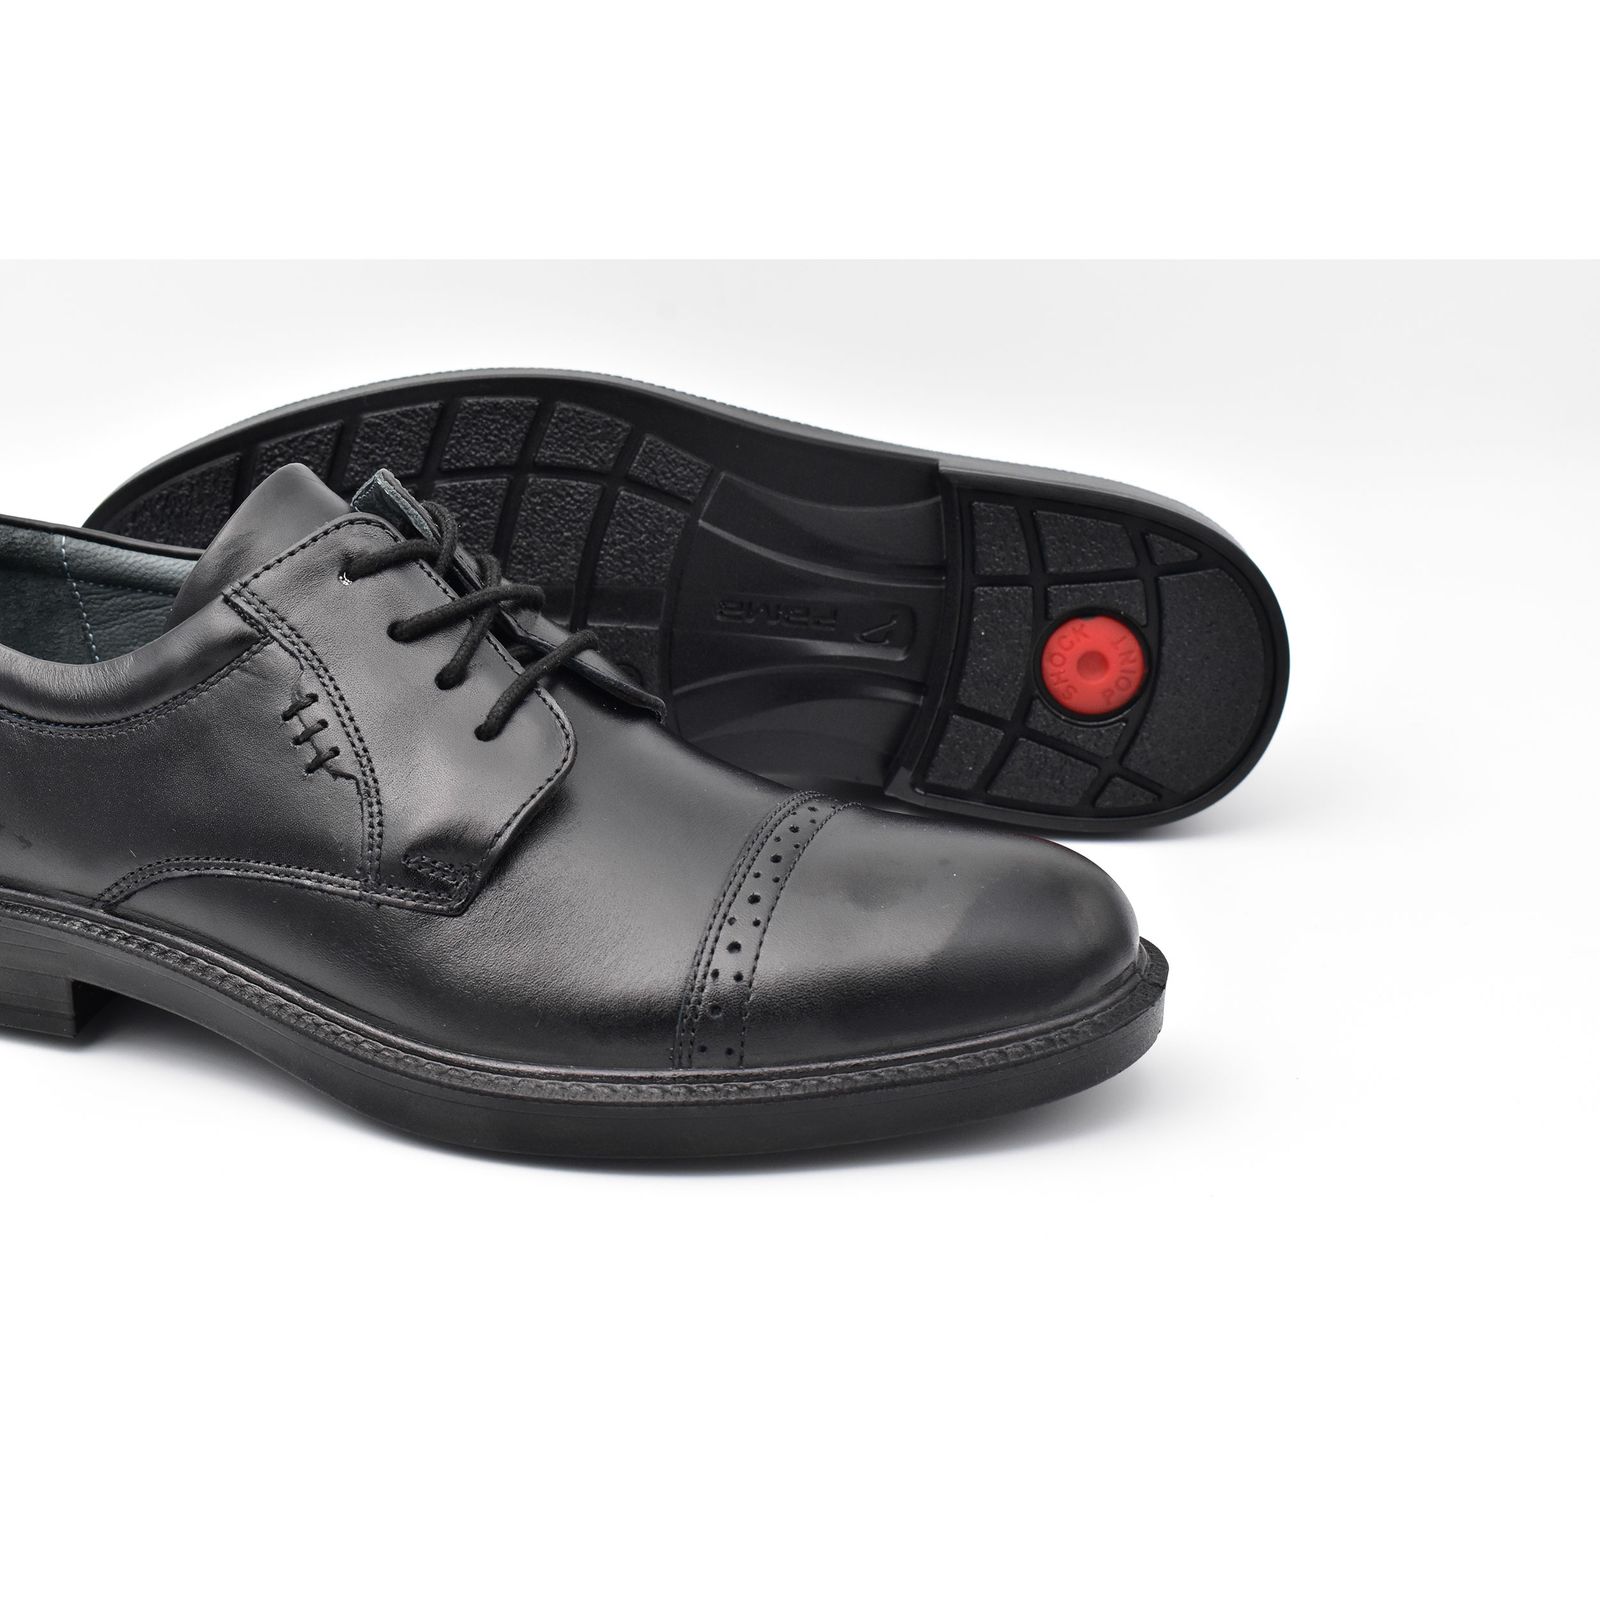 کفش مردانه پاما مدل TOE کد G1119 -  - 6